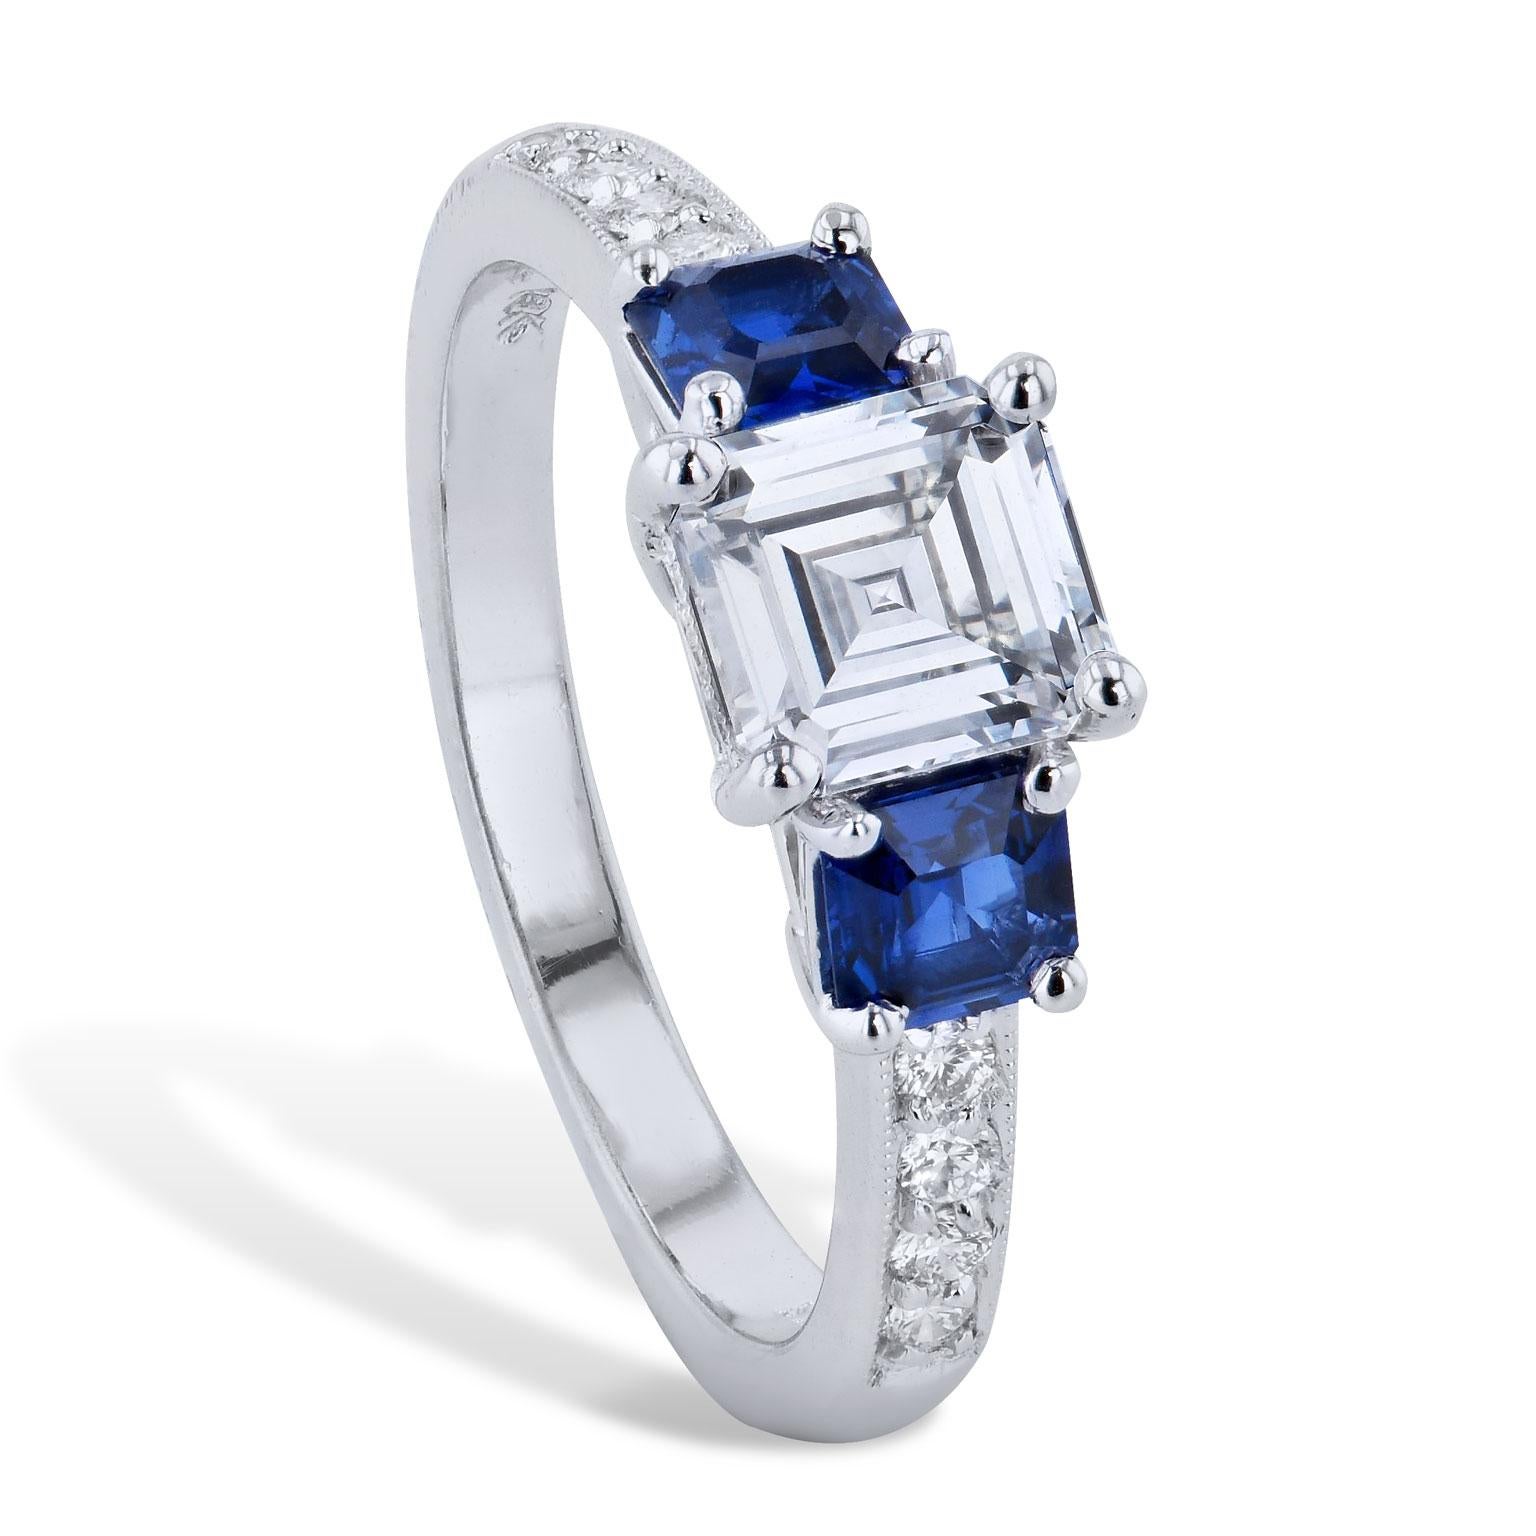 H&H GIA Cert 1,02 Karat Quadratischer Smaragdschliff Diamantring 2 Assher Blaue Saphire

Ein Platin-Verlobungsring mit 1,02 ct quadratischen Smaragd geschliffenen Diamanten, G-VS2 (GIA-Zertifikat # 12243899) Prong-Set in der Mitte und 2 Assher